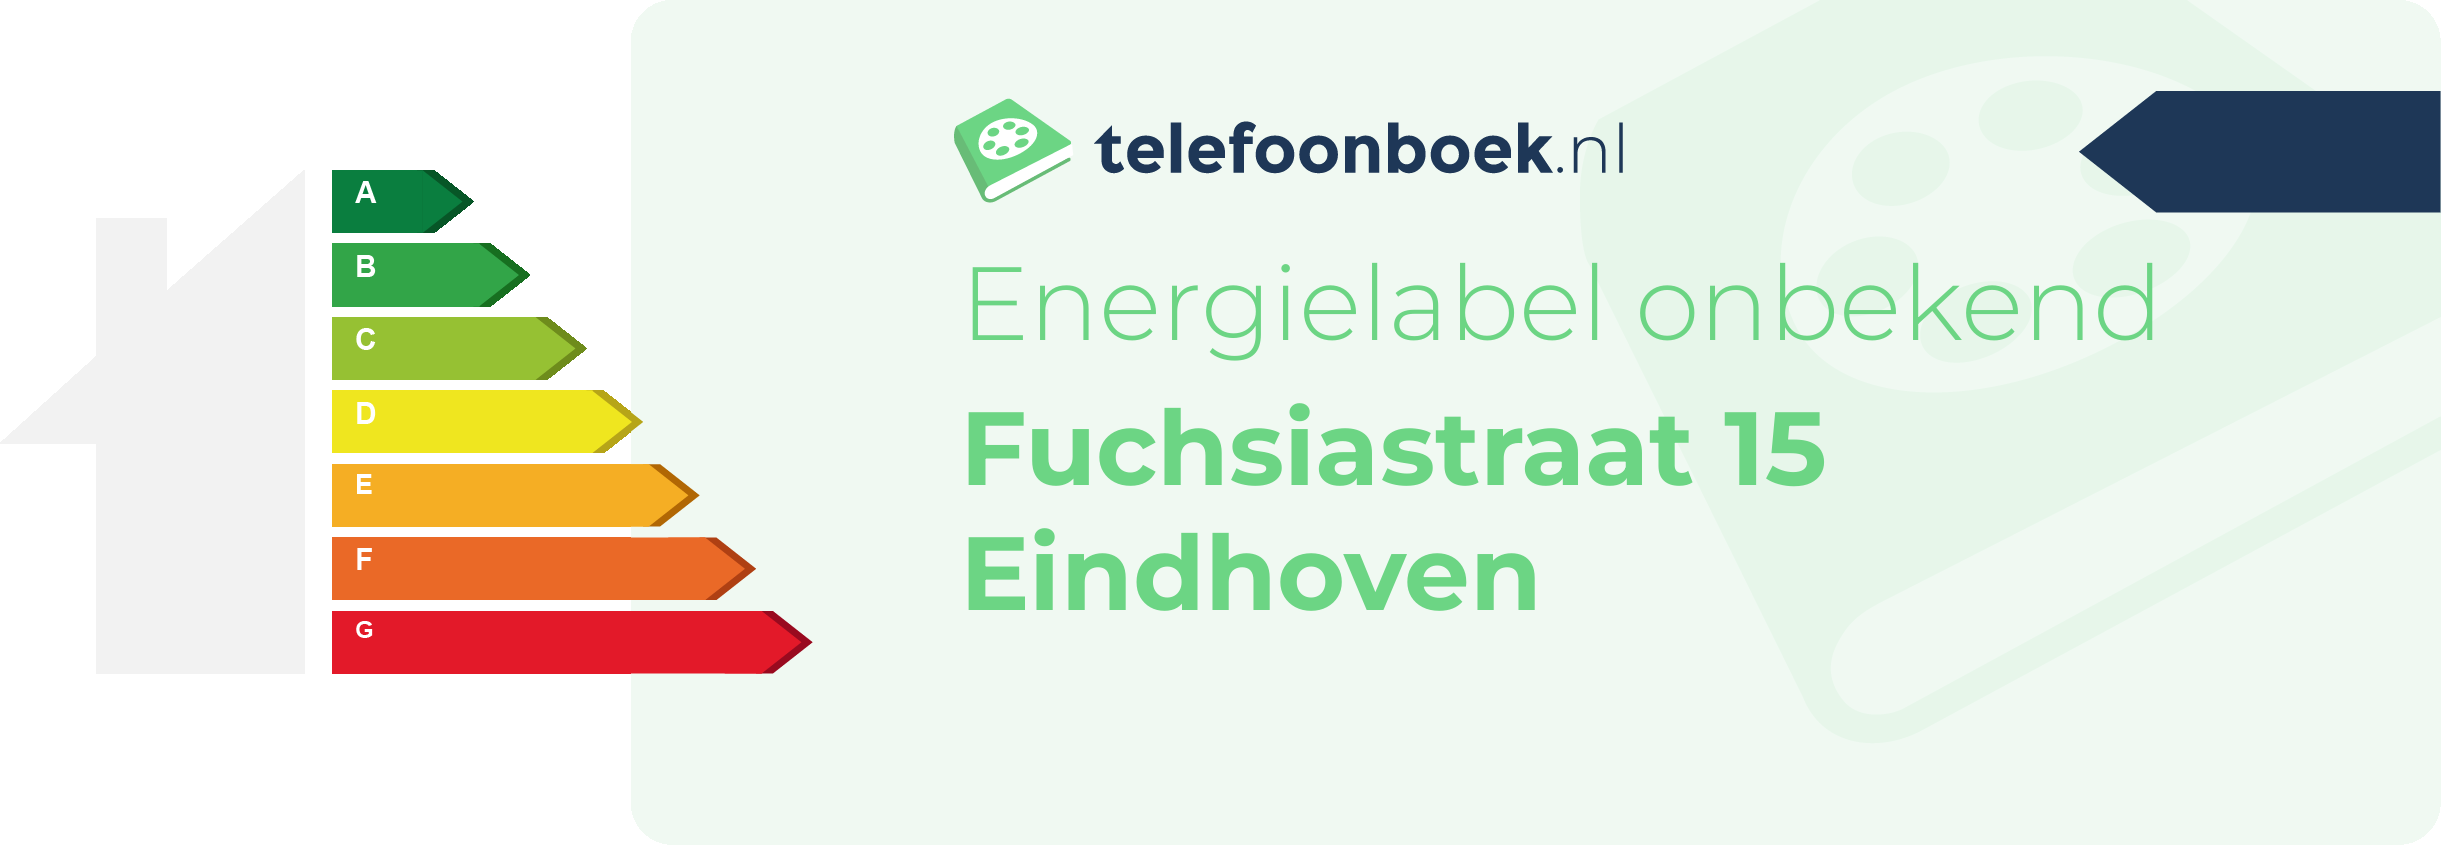 Energielabel Fuchsiastraat 15 Eindhoven